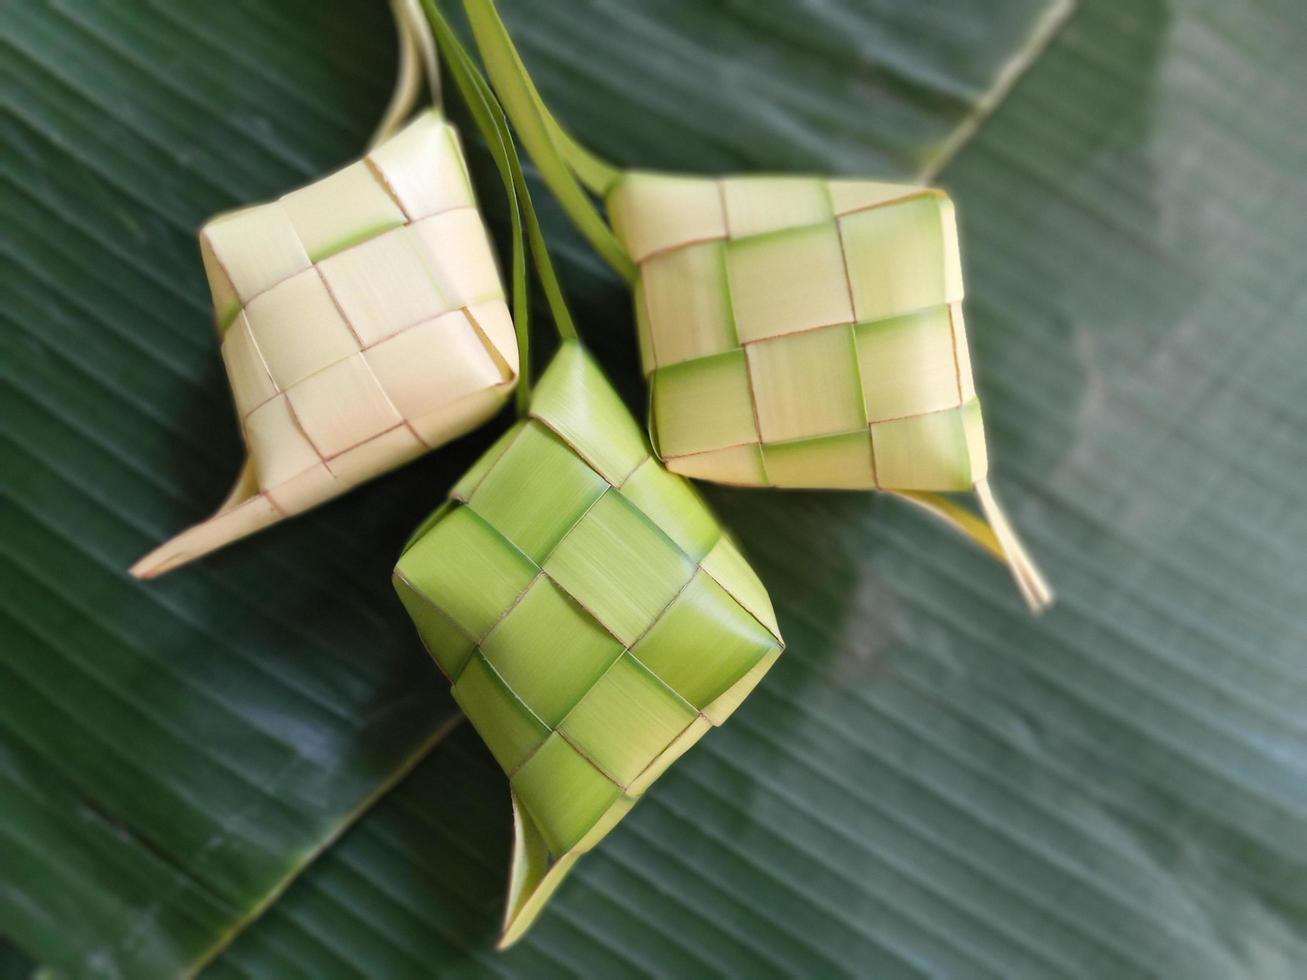 ketupat ist in indonesien eine art, reis zu kochen, indem reis in ein kokosnussblatt gesteckt wird, das wie ein diamant geformt ist. dann gedämpft. sehr berühmt in indonesien. erscheint normalerweise auf eid al-fitr foto